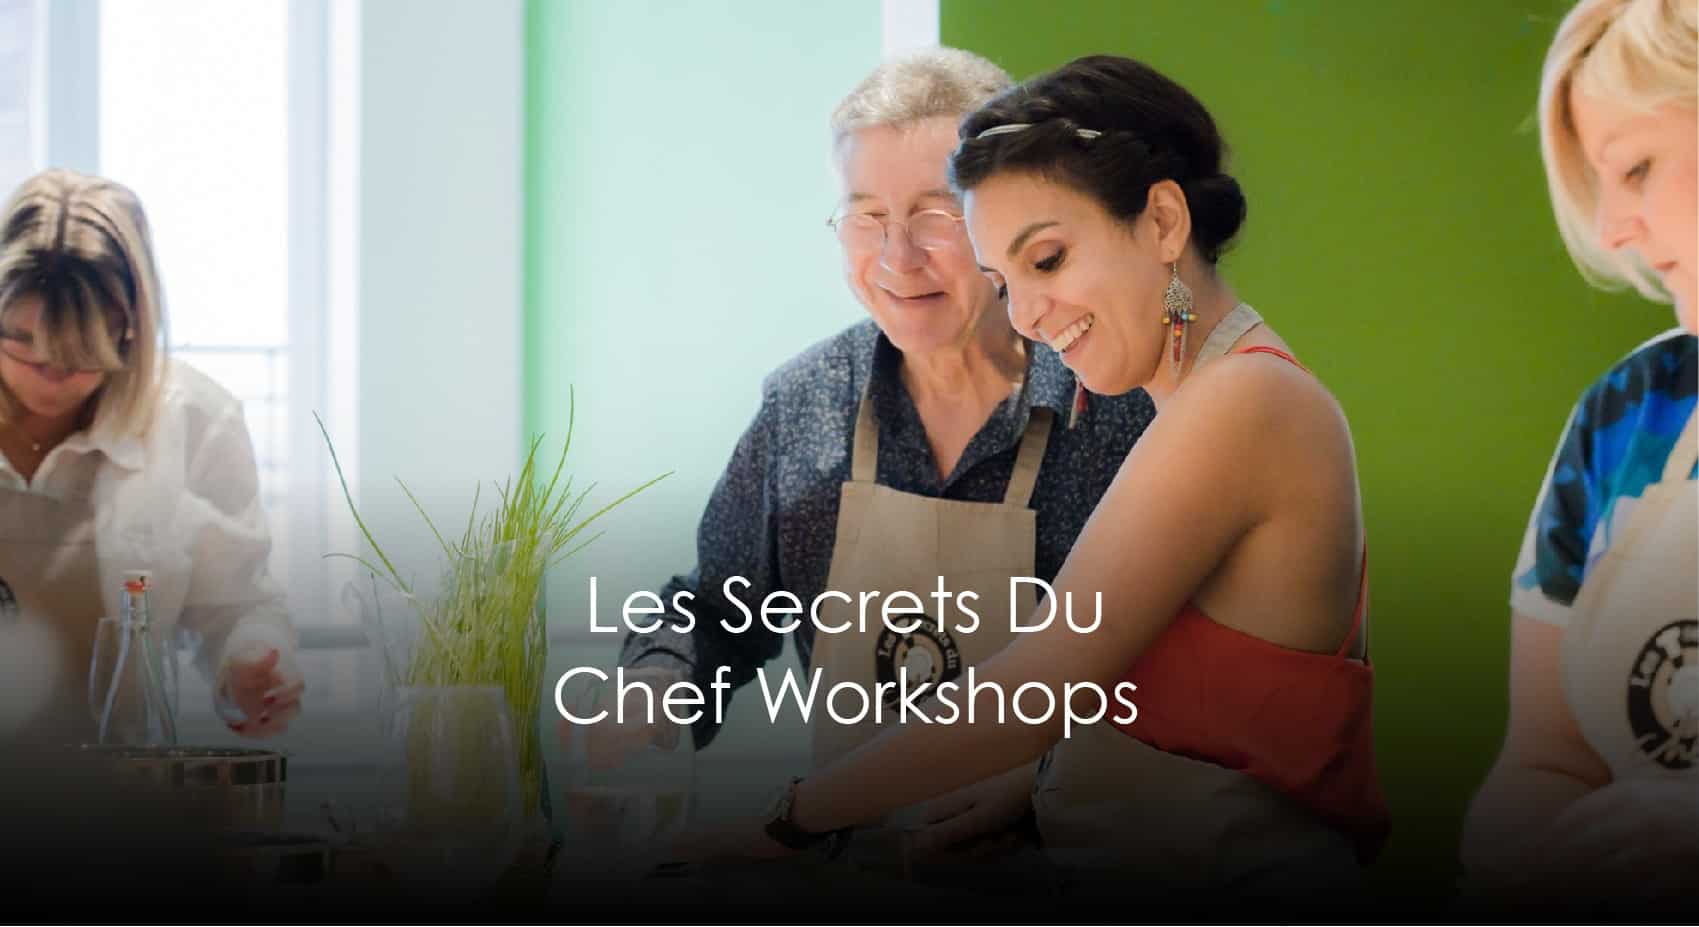 Les Secrets du Chef Workshops | Docks Bruxsel | Shopping Center in Brussels